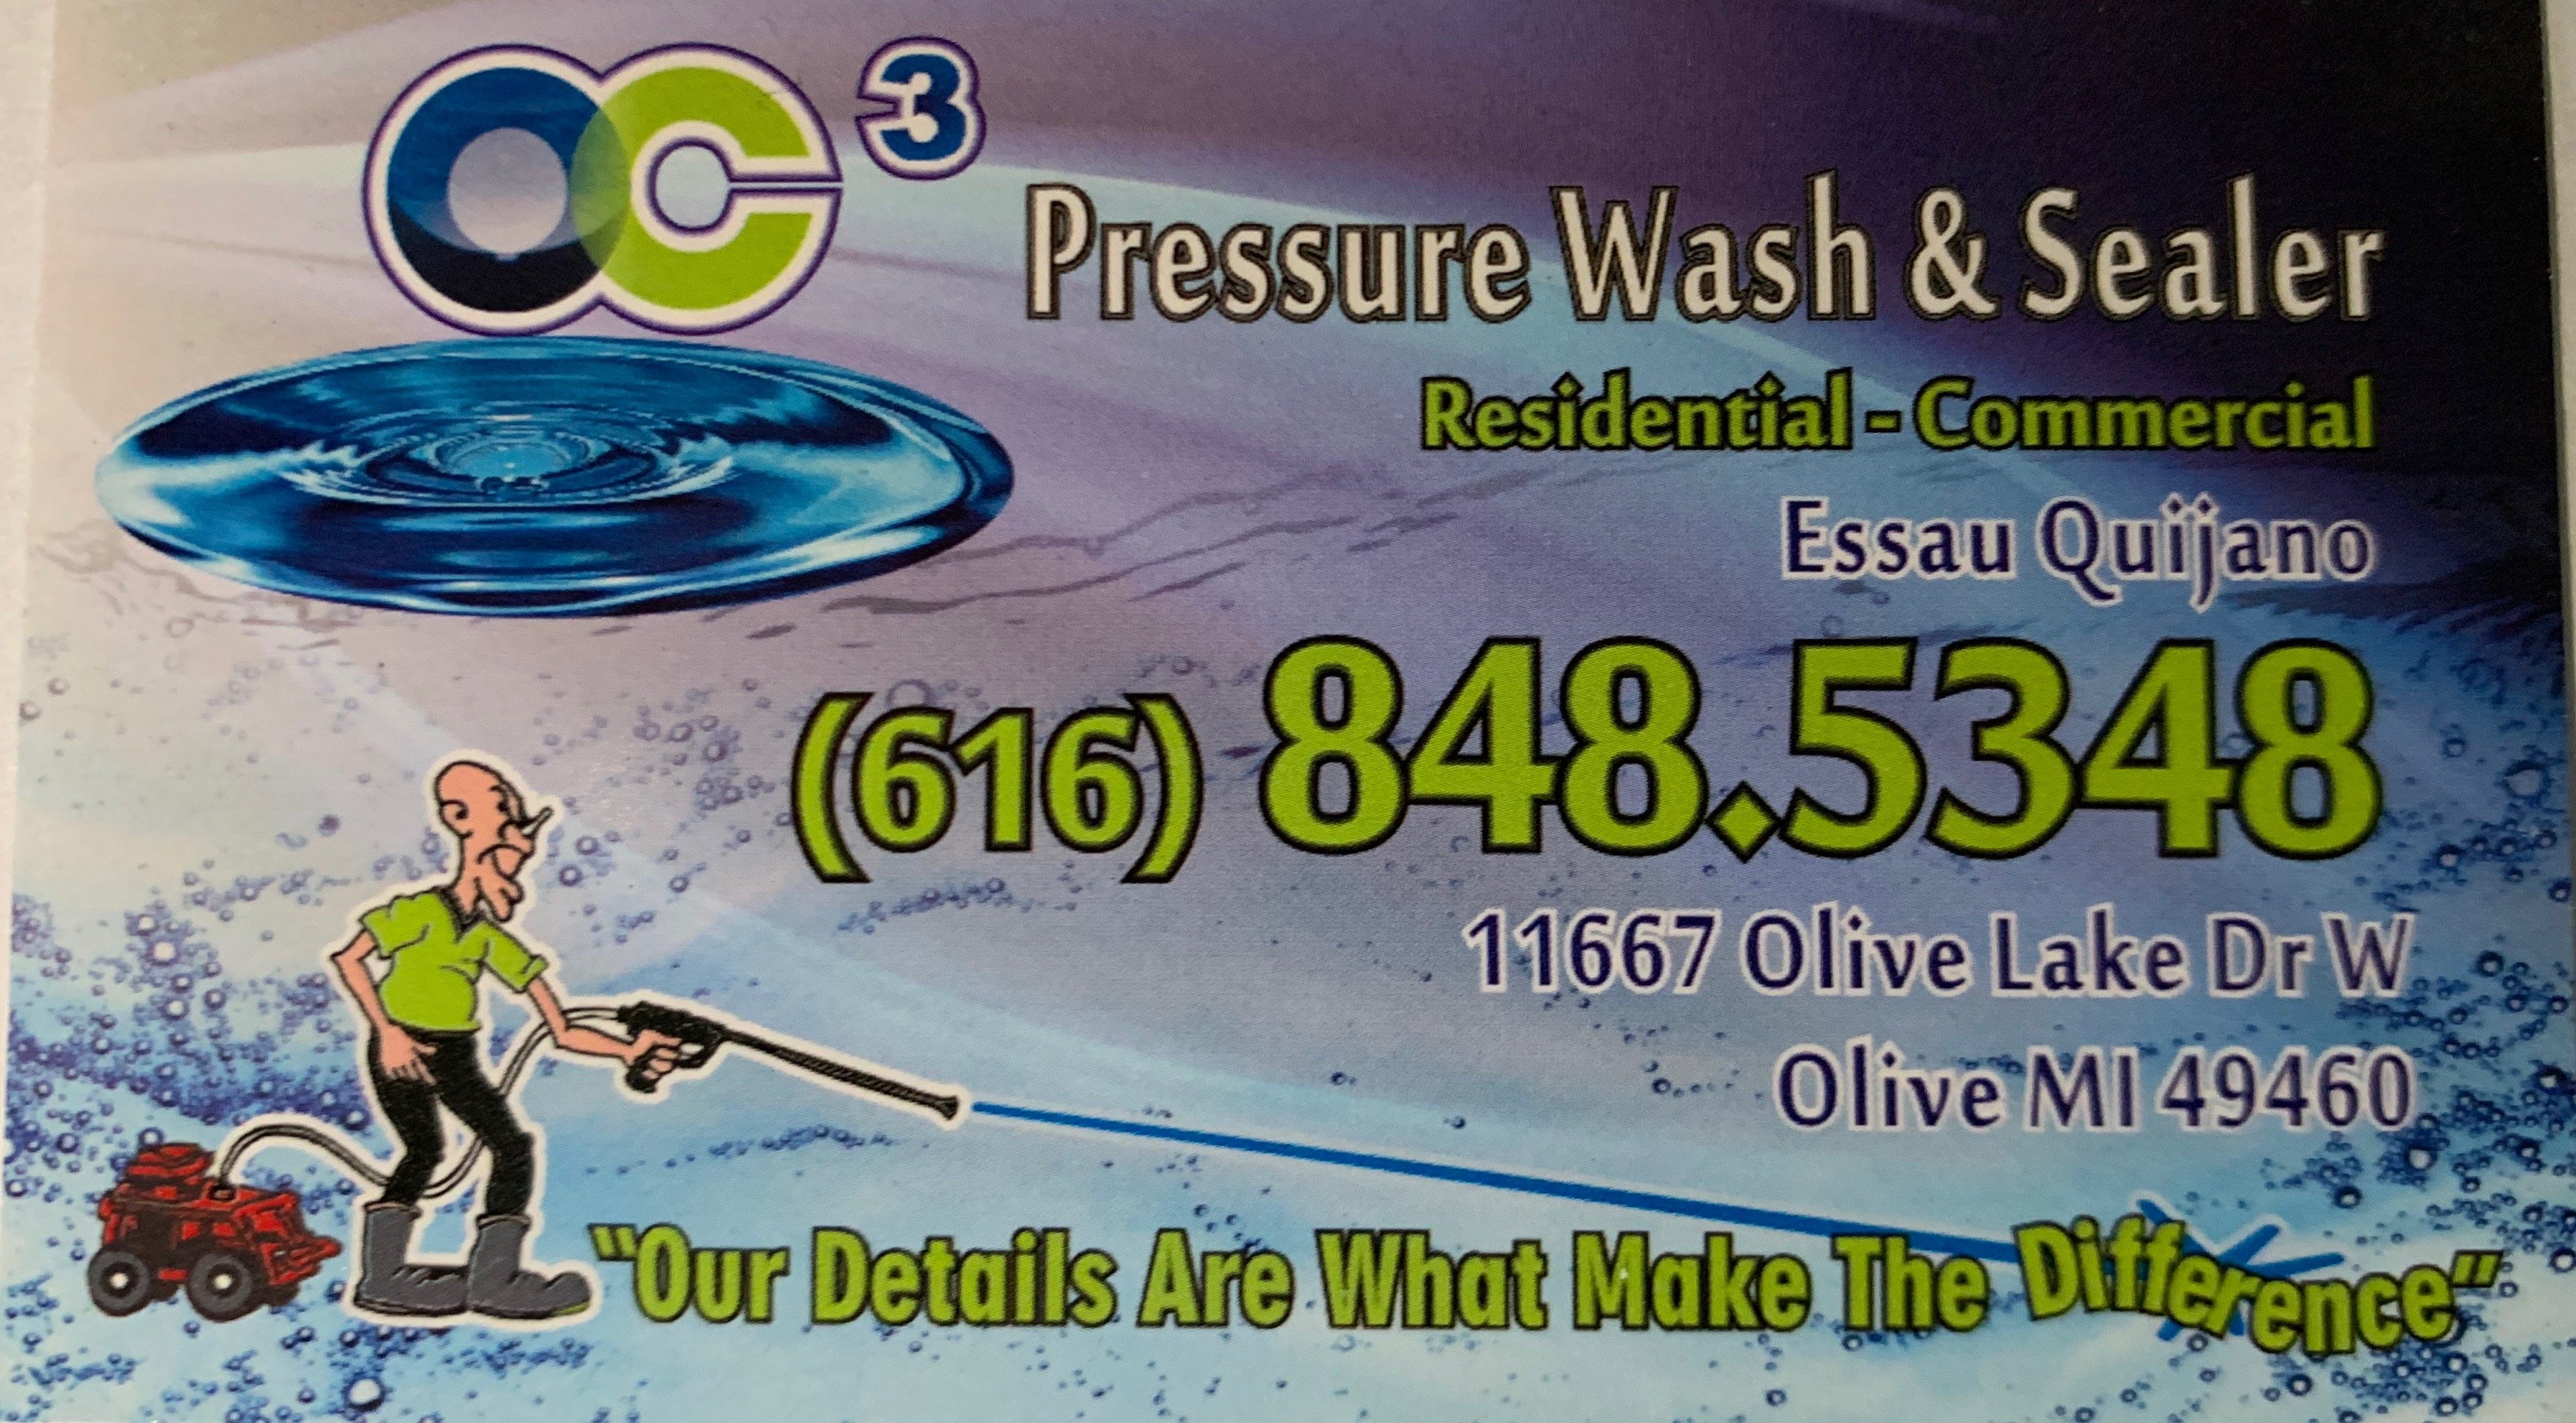 OC3 Pressure Wash and Sealer Logo